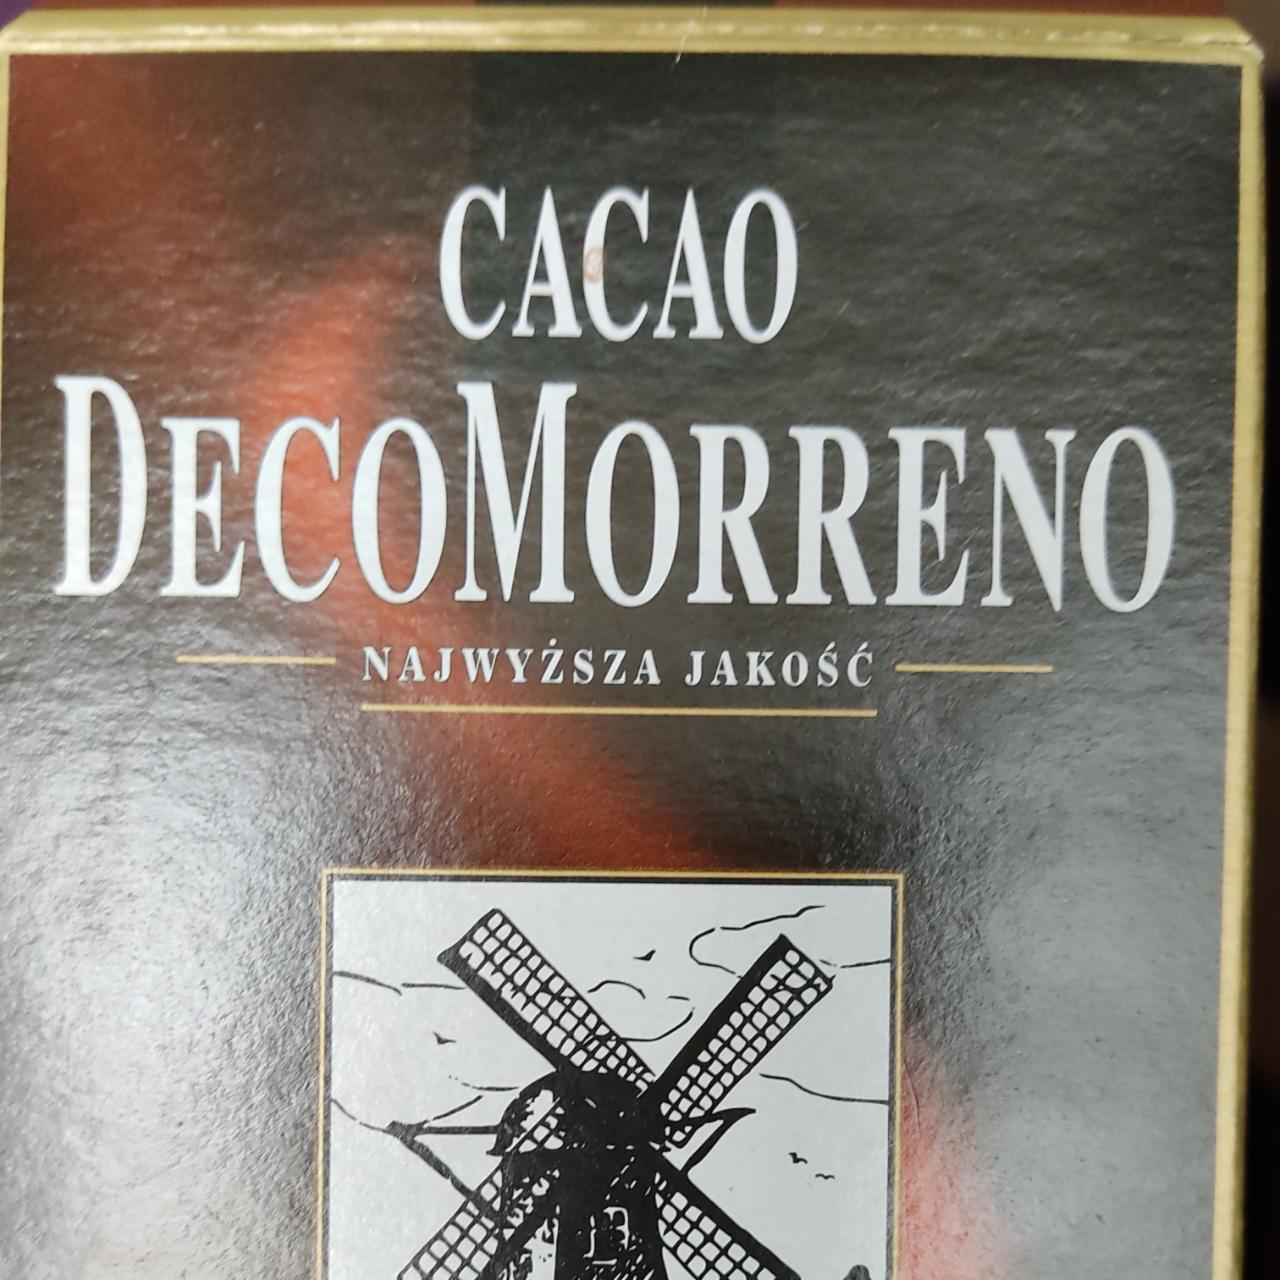 Fotografie - Najwyższa Jakość Cacao DecoMorreno